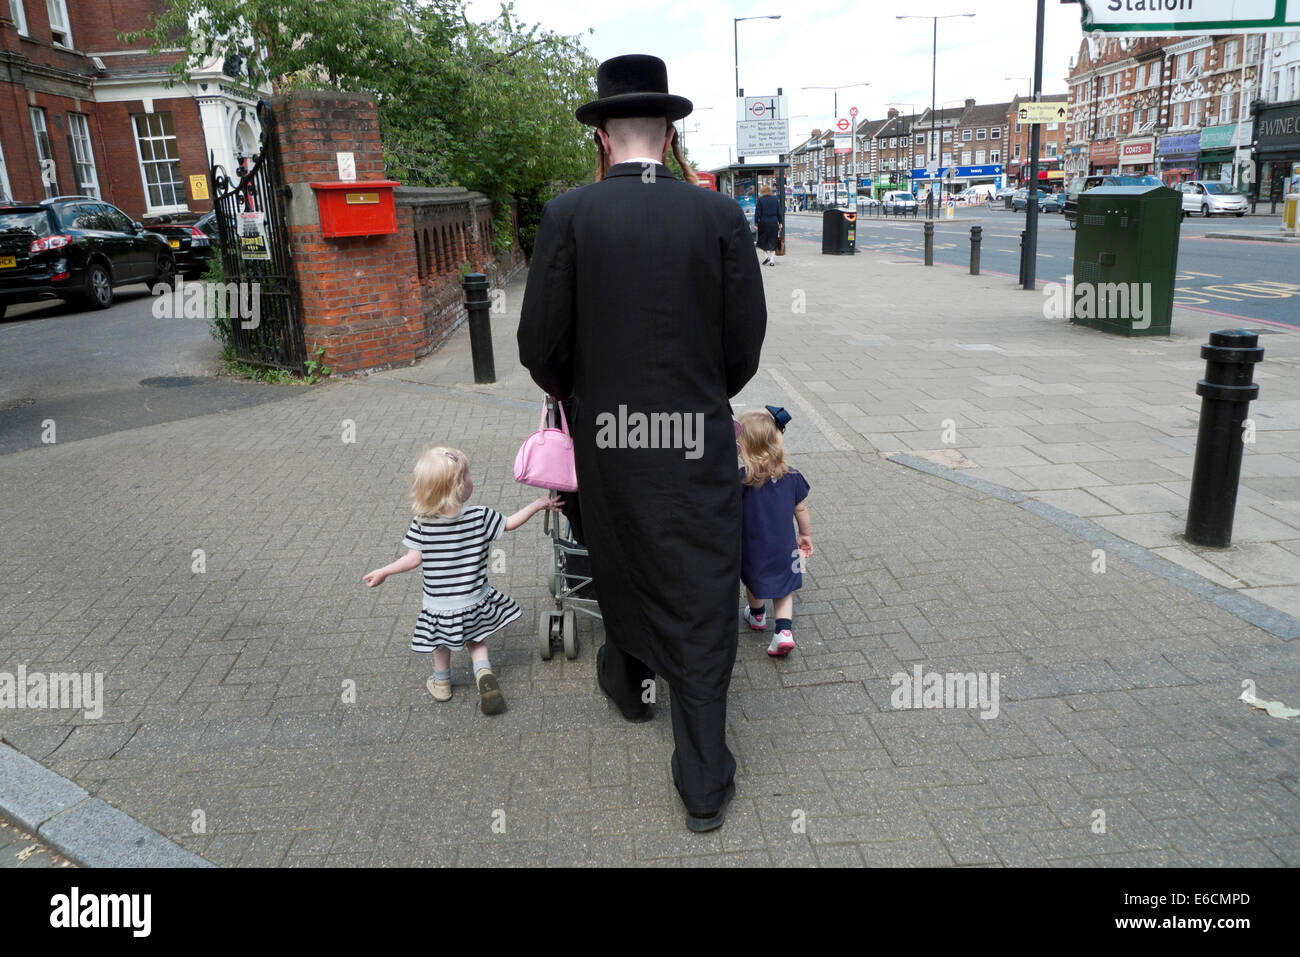 Orthodoxer chassidischer jüdischer Vater, der mit Familienkindern und Kinderwagen durch die Stadt läuft Stoke Newington, Hackney London, Großbritannien KATHY DEWITT Stockfoto